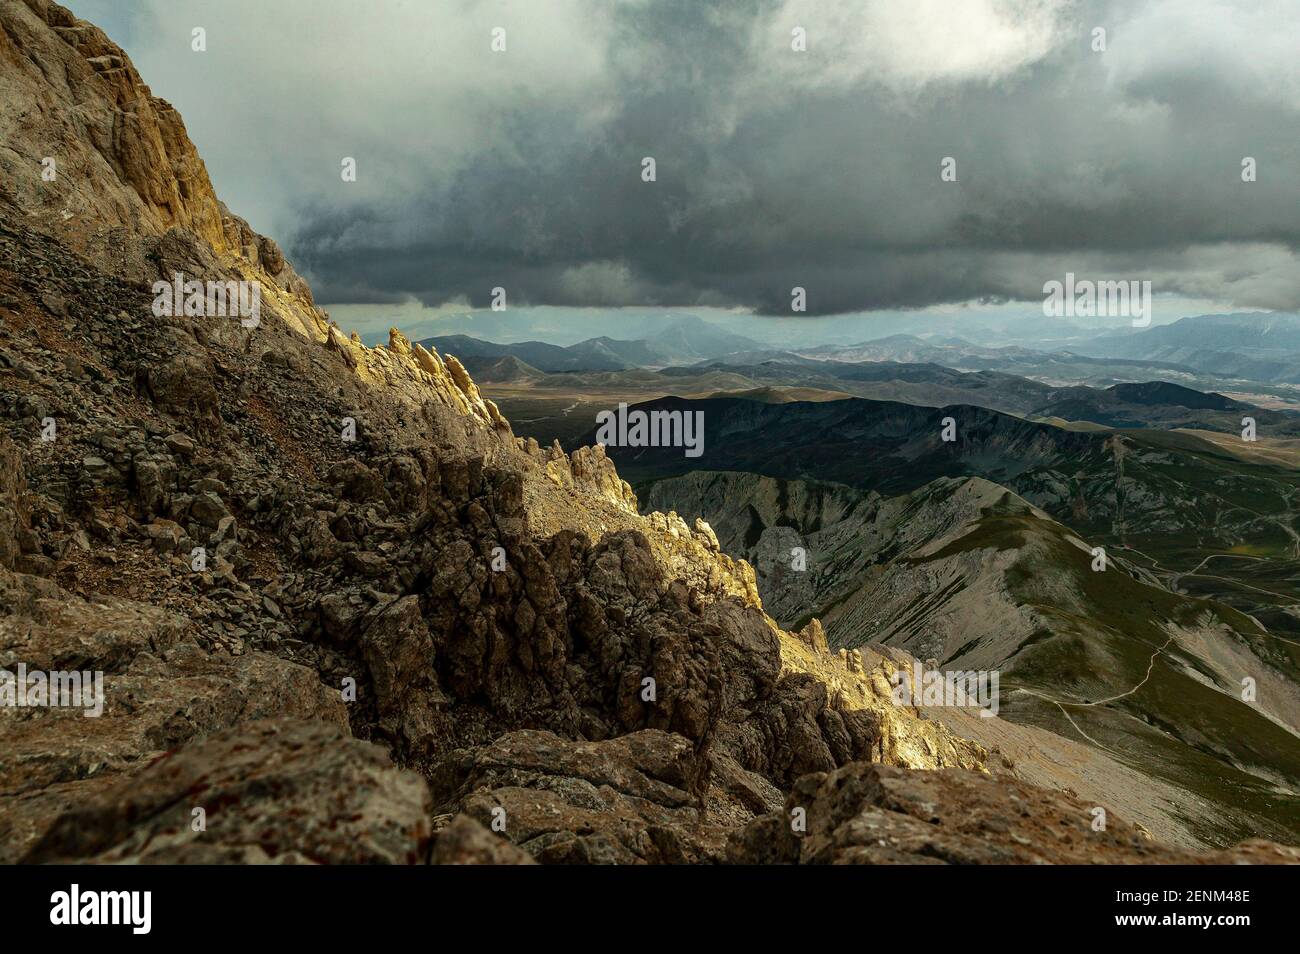 Gran Sasso et Monti della Laga National Park, le plateau de Campo Imperatore vu du chemin descendant du sommet de Corno Grande. Abruzzes, Ital Banque D'Images